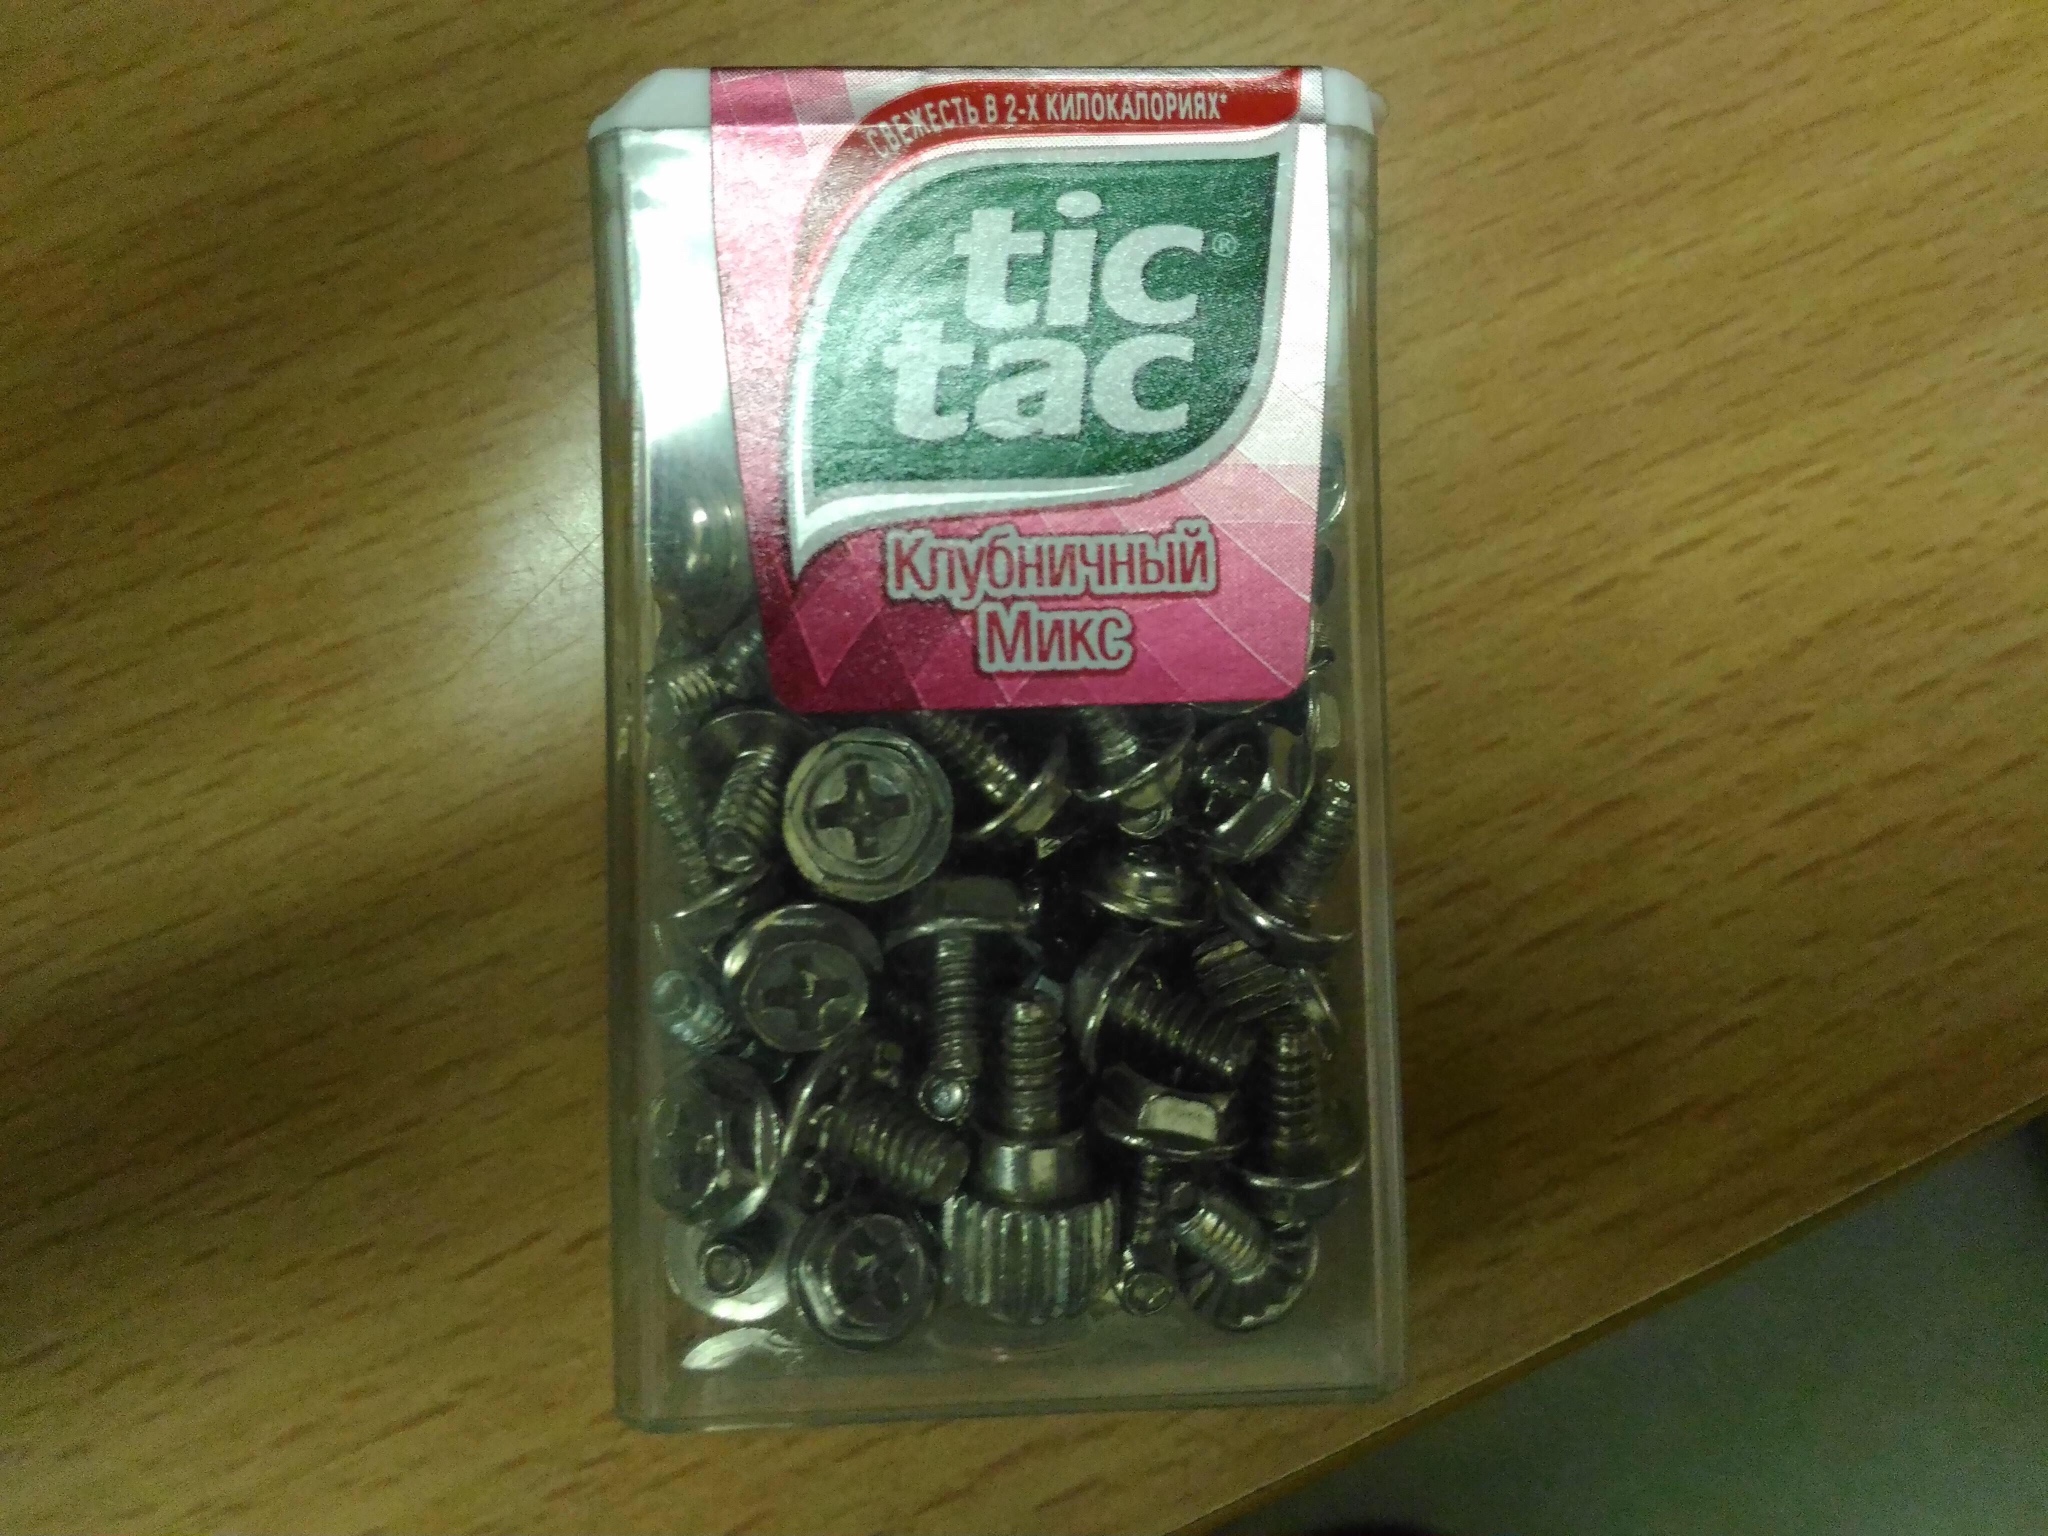 tic tac container full of screws